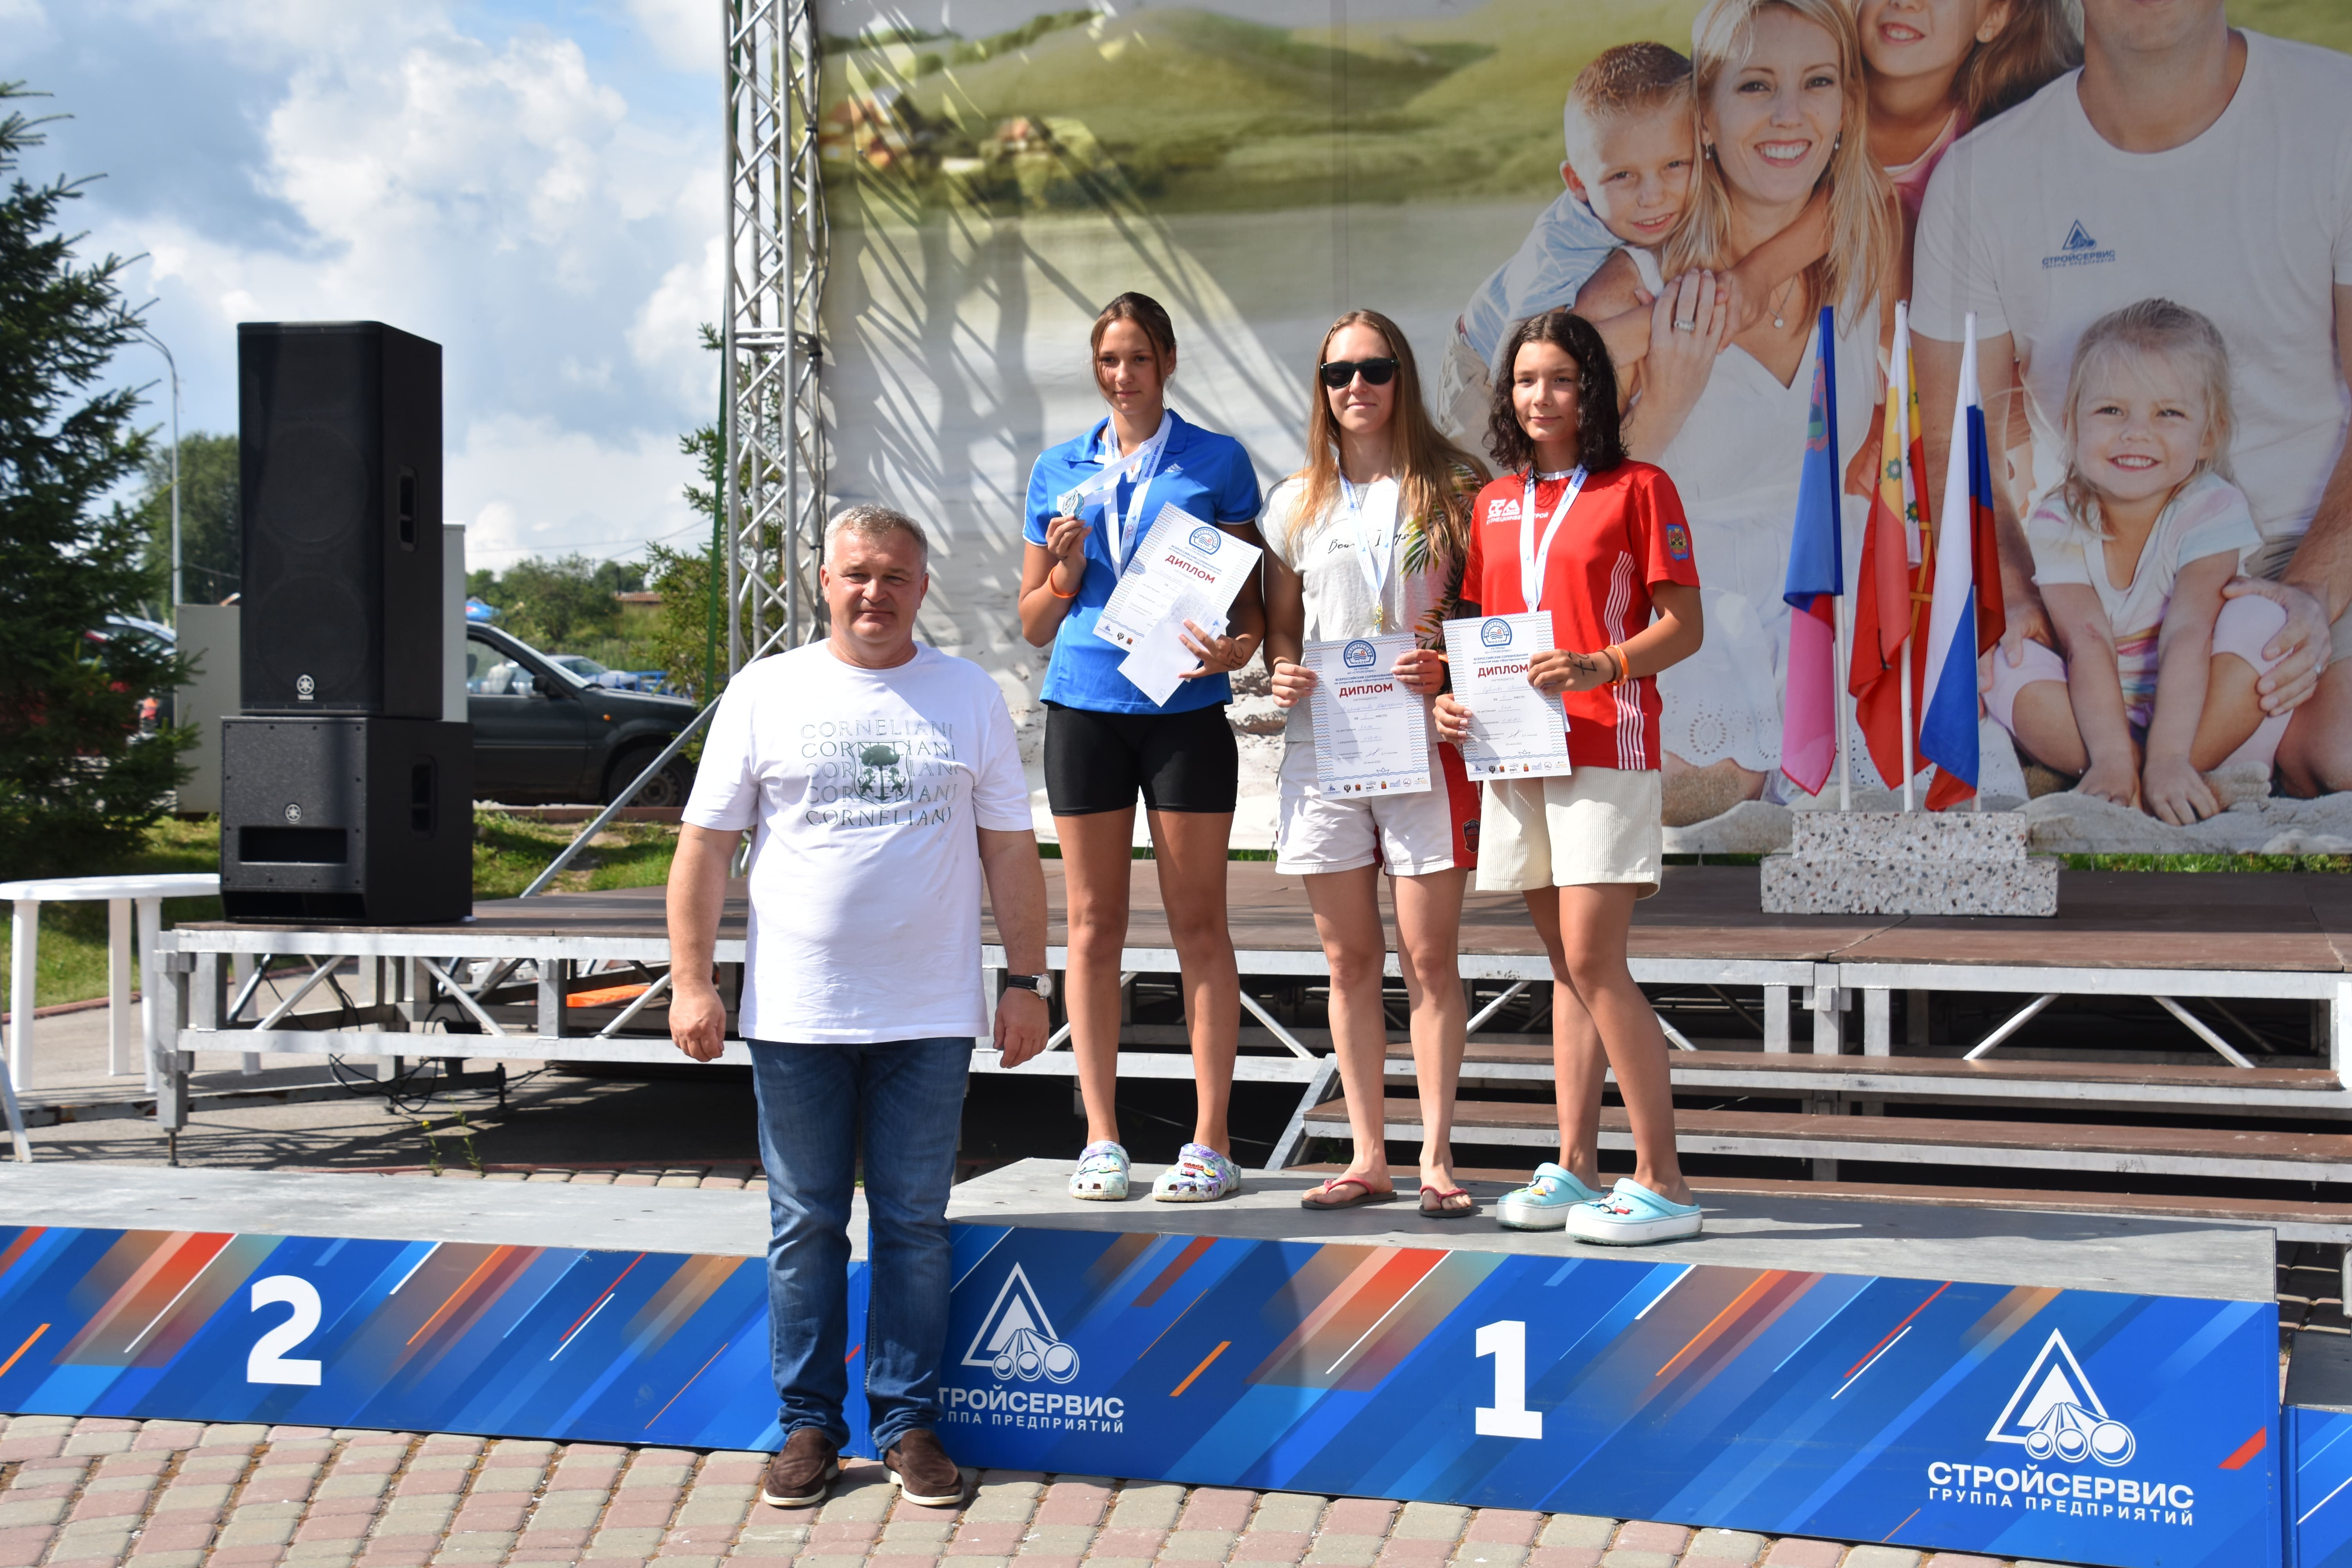 В центре отдыха Салаирские плесы прошли всероссийские соревнования по плаванию Шахтерская миля на призы АО Стройсервис. Стройсервис